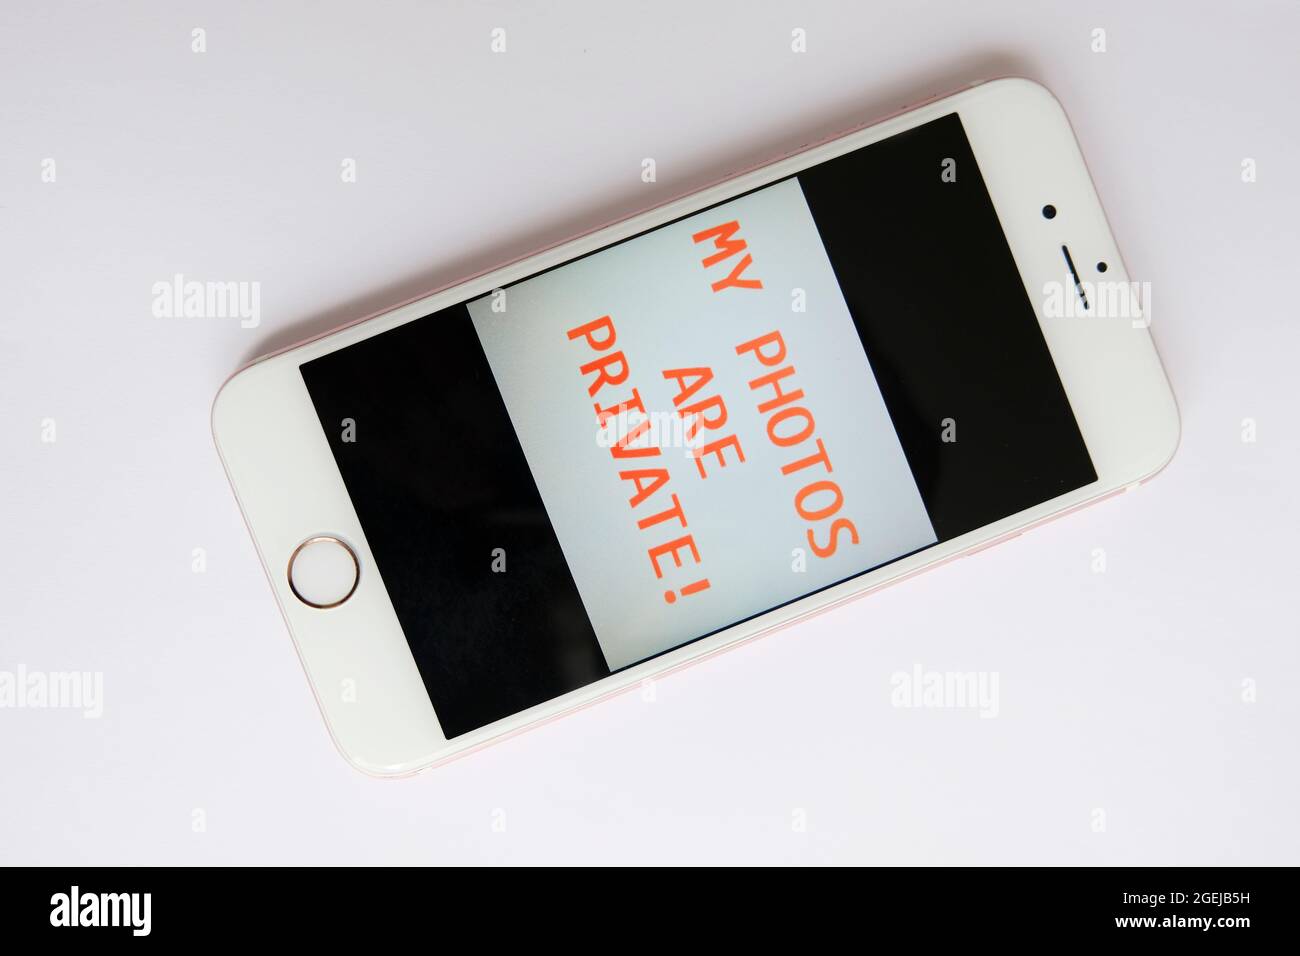 IPhone con mensaje de seguridad de su propietario a snoopers Foto de stock